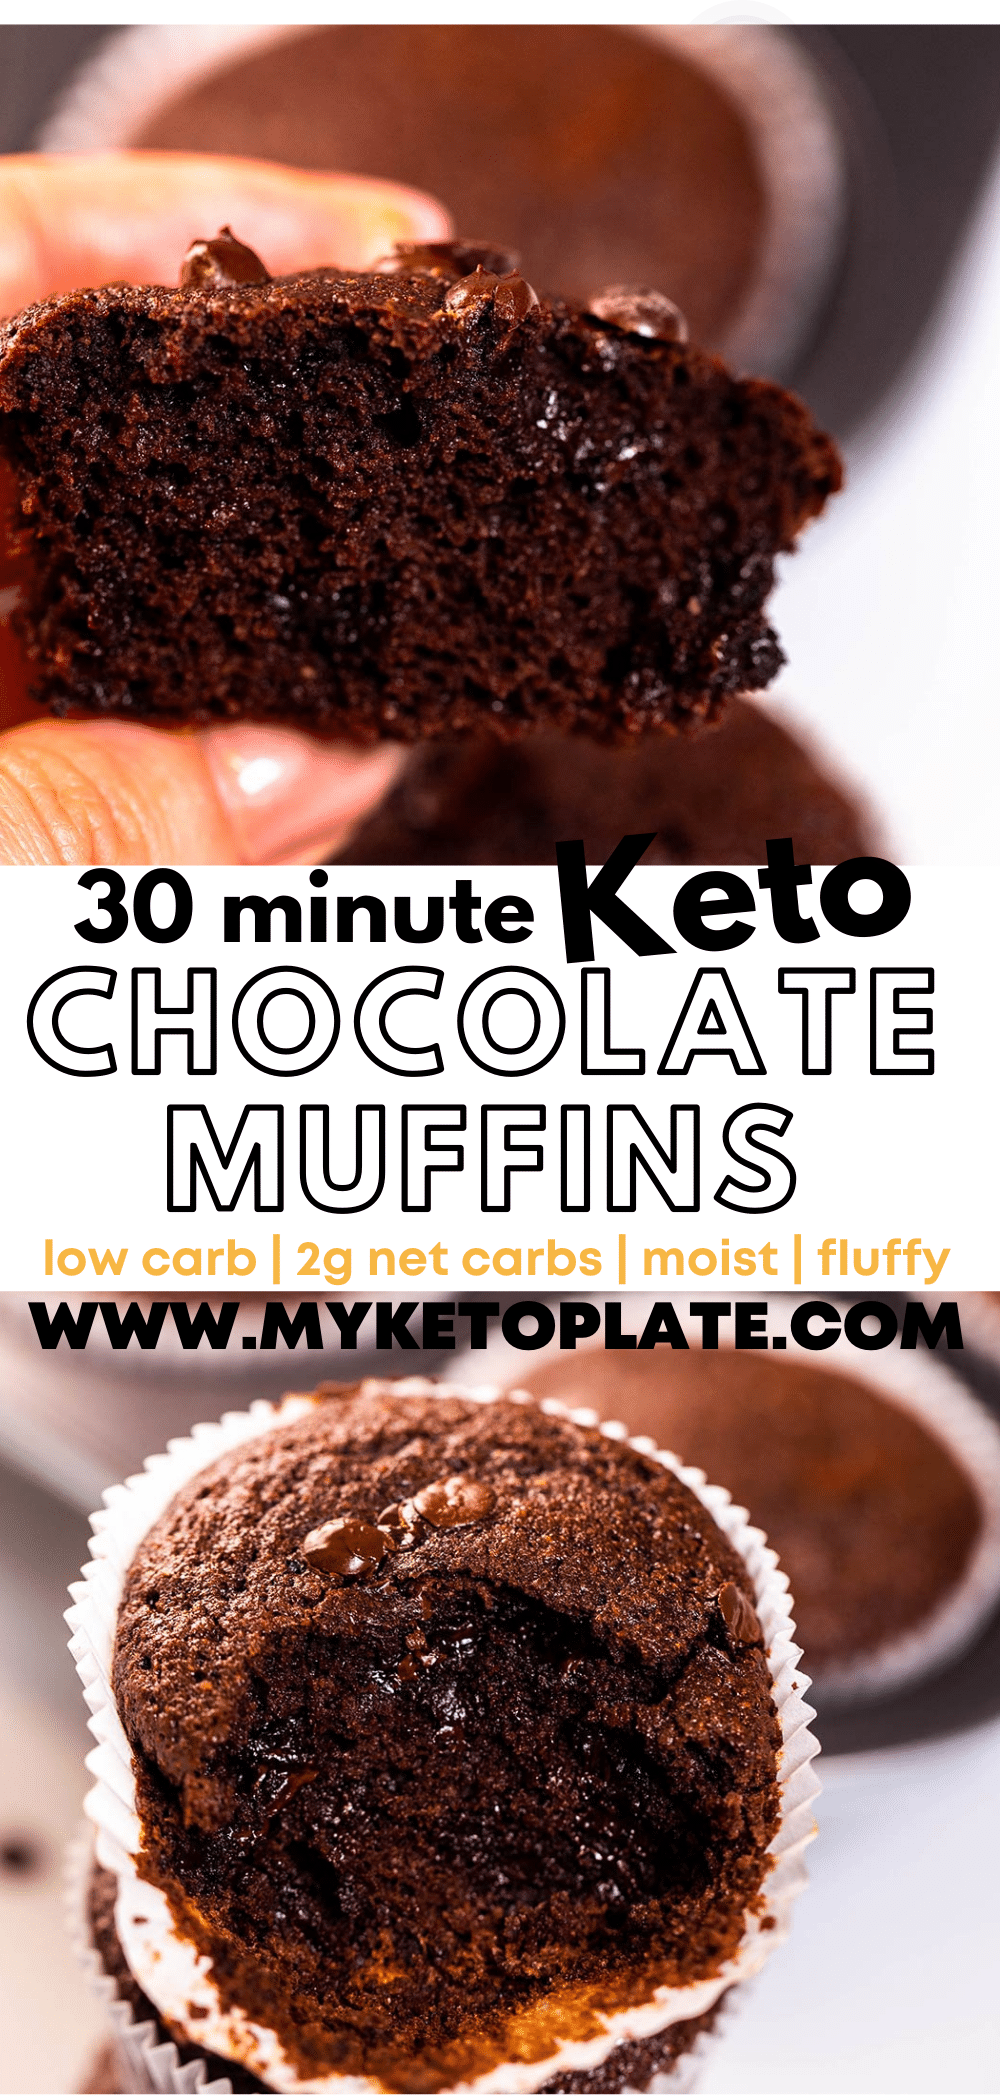 Keto Chocolate Muffins - MyKetoPlate